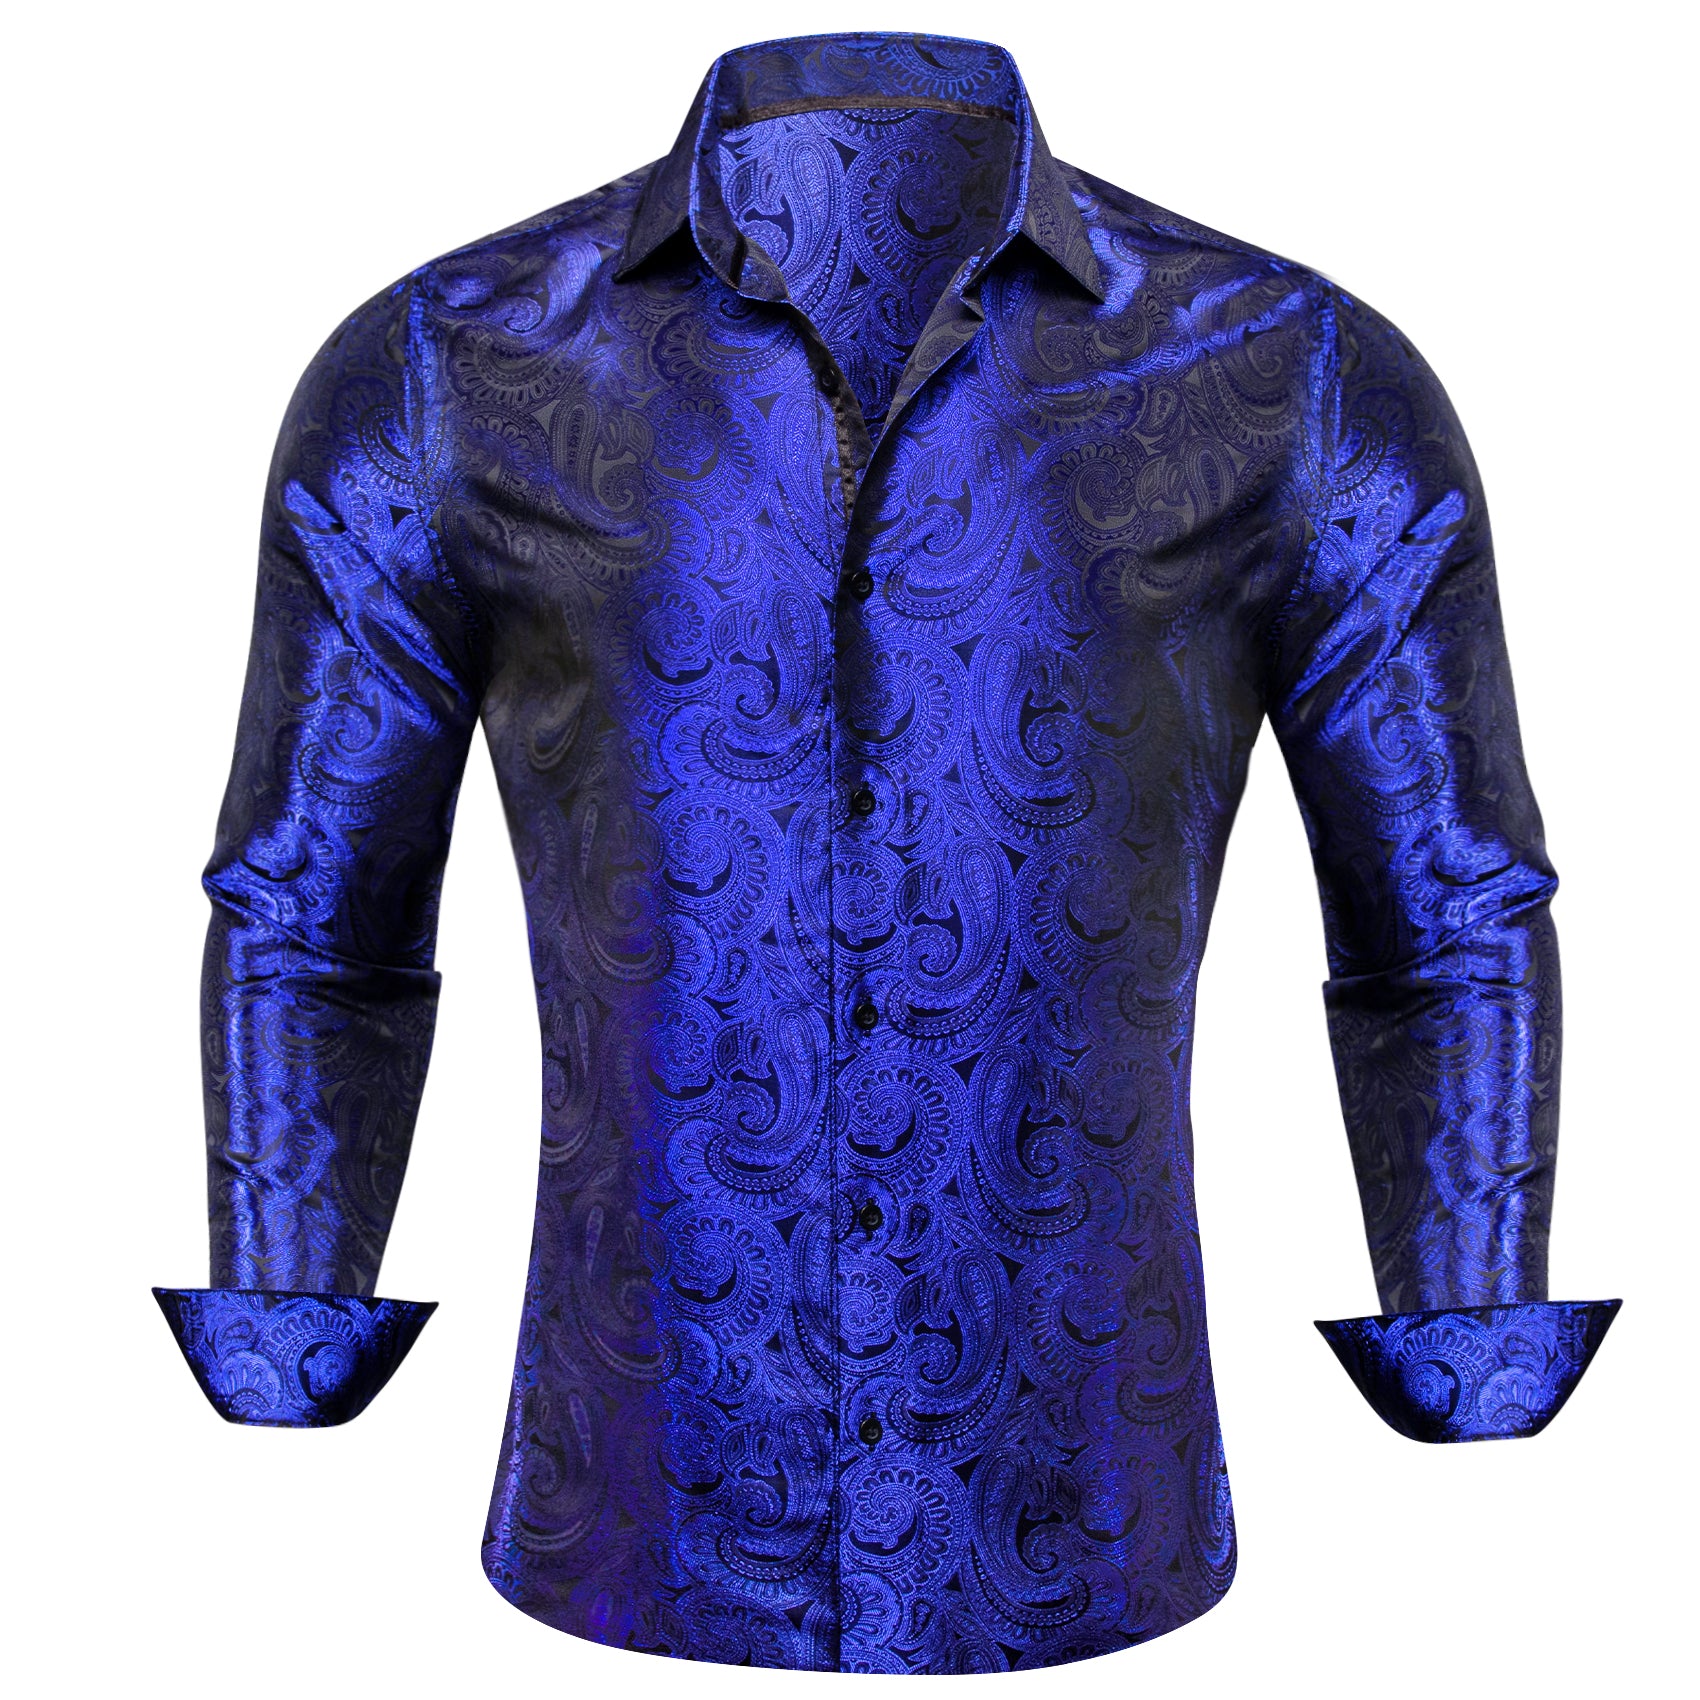 Barry.wang Sapphire Blue Paisley Silk Men's Shirt